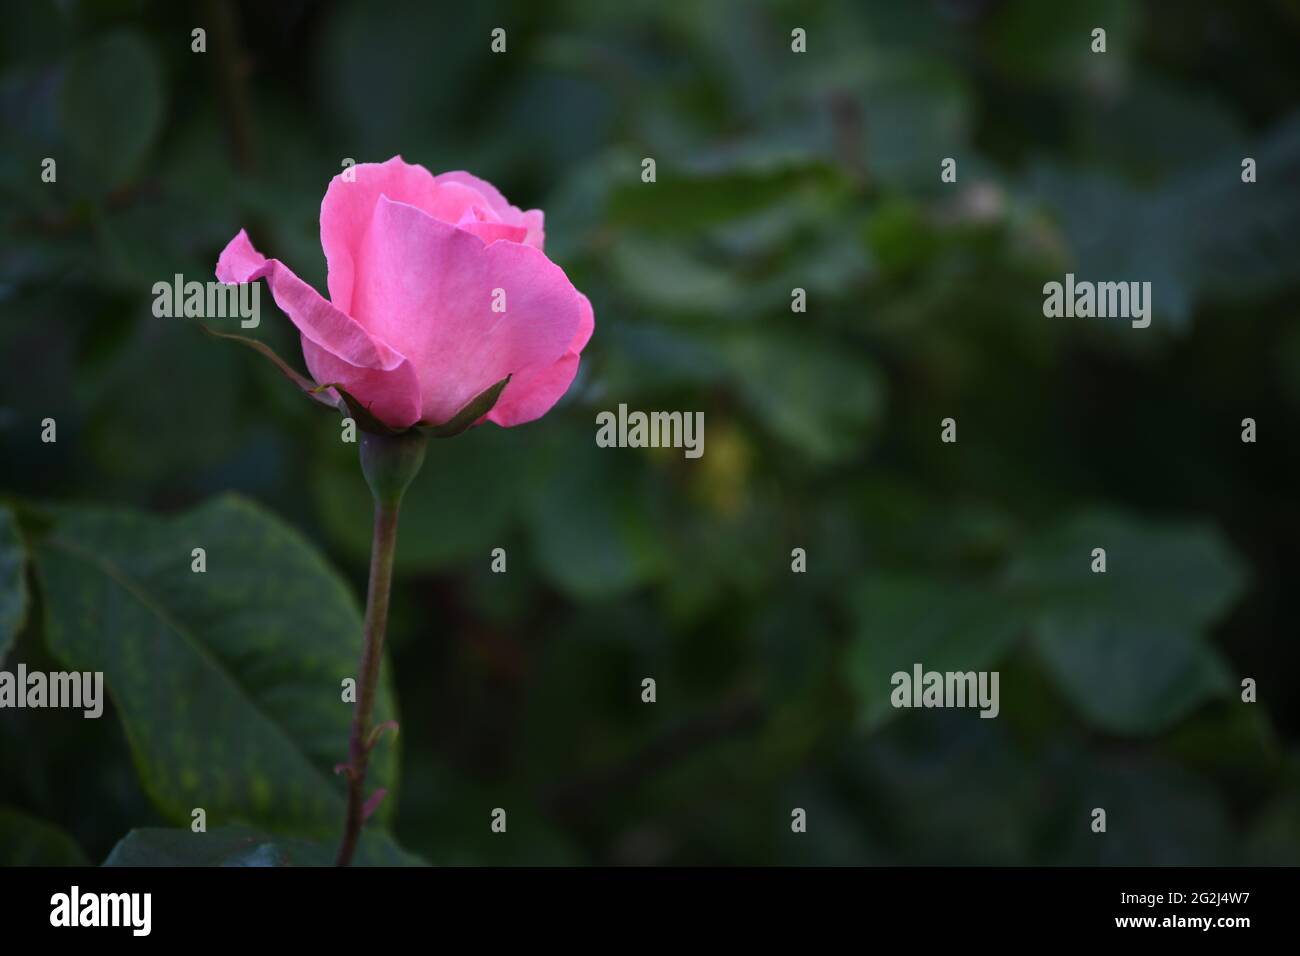 Heilpflanze Rose - rosa - mit herrlicher rosafarbener Rosenblüte als Zeichen der Liebe und Freundschaft Foto de stock